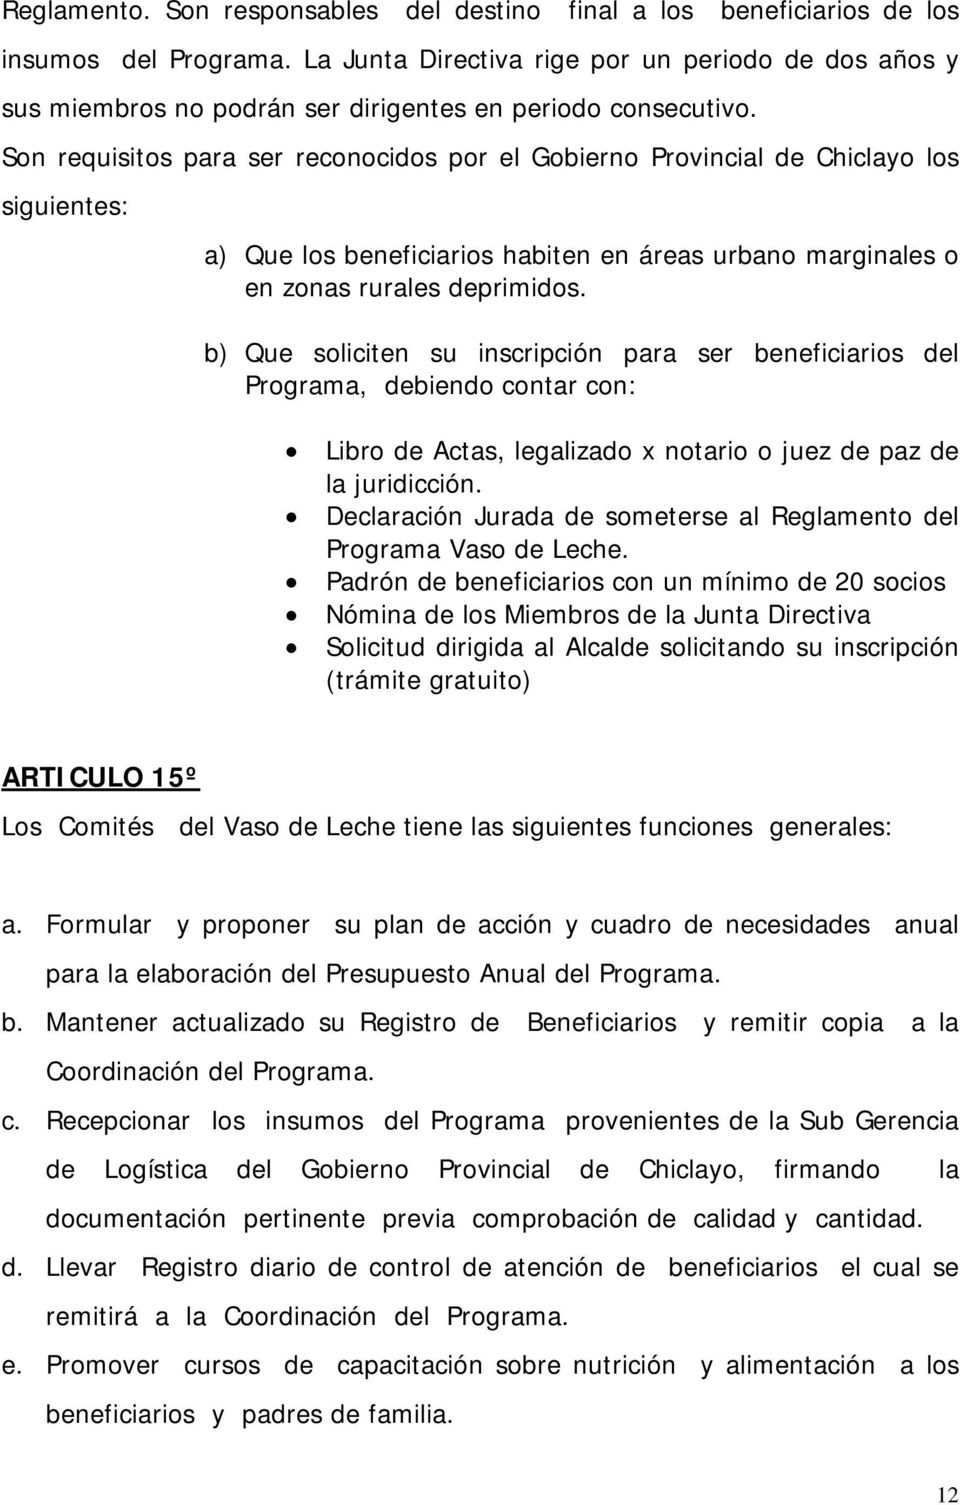 Son requisitos para ser reconocidos por el Gobierno Provincial de Chiclayo los siguientes: a) Que los beneficiarios habiten en áreas urbano marginales o en zonas rurales deprimidos.